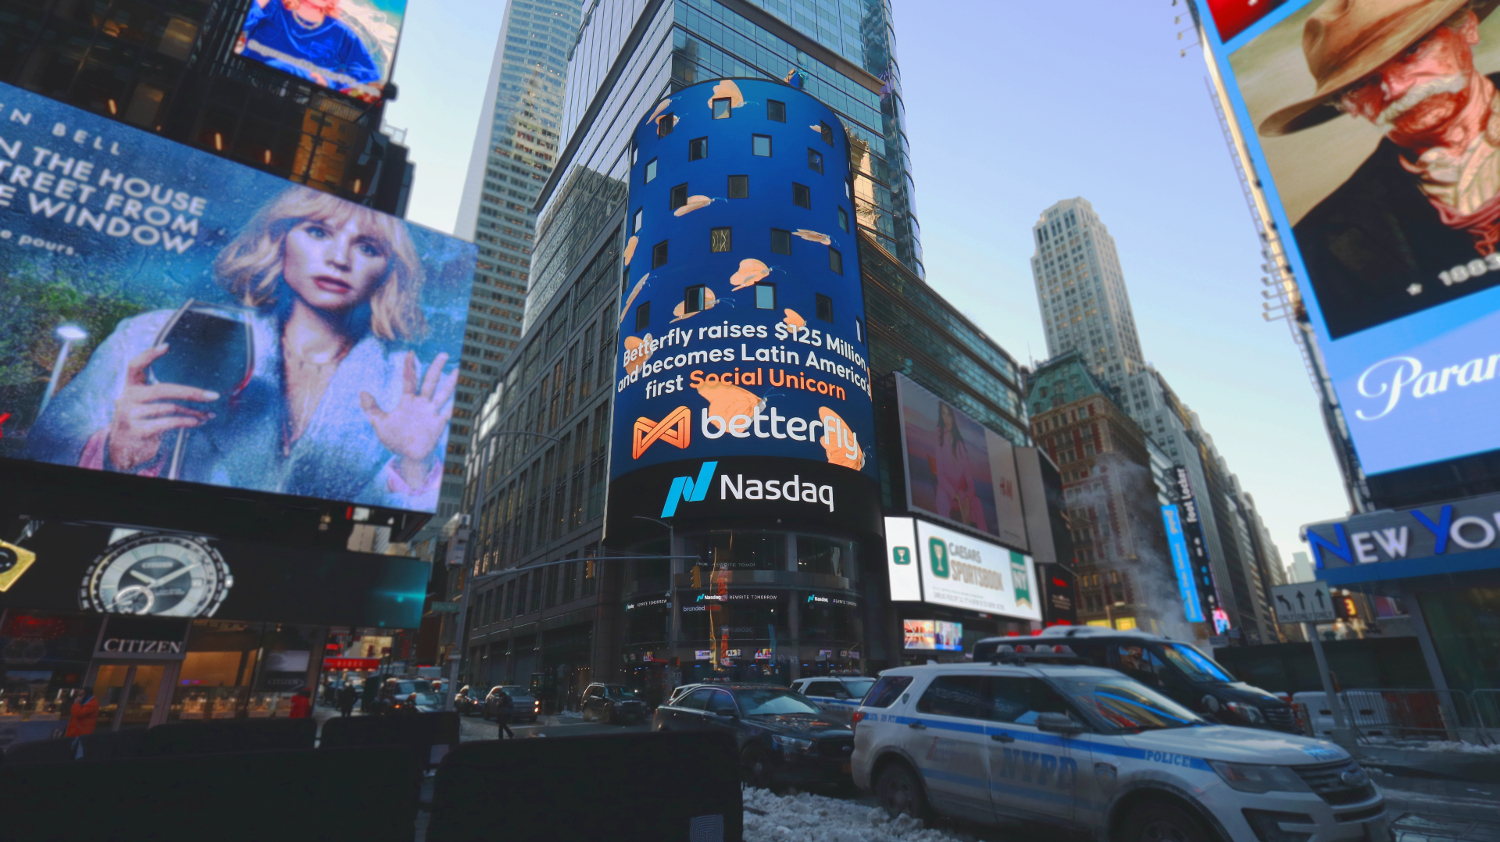 Anuncio de NASDAQ en Nueva York con motivo del estatus de unicornio de Betterfly